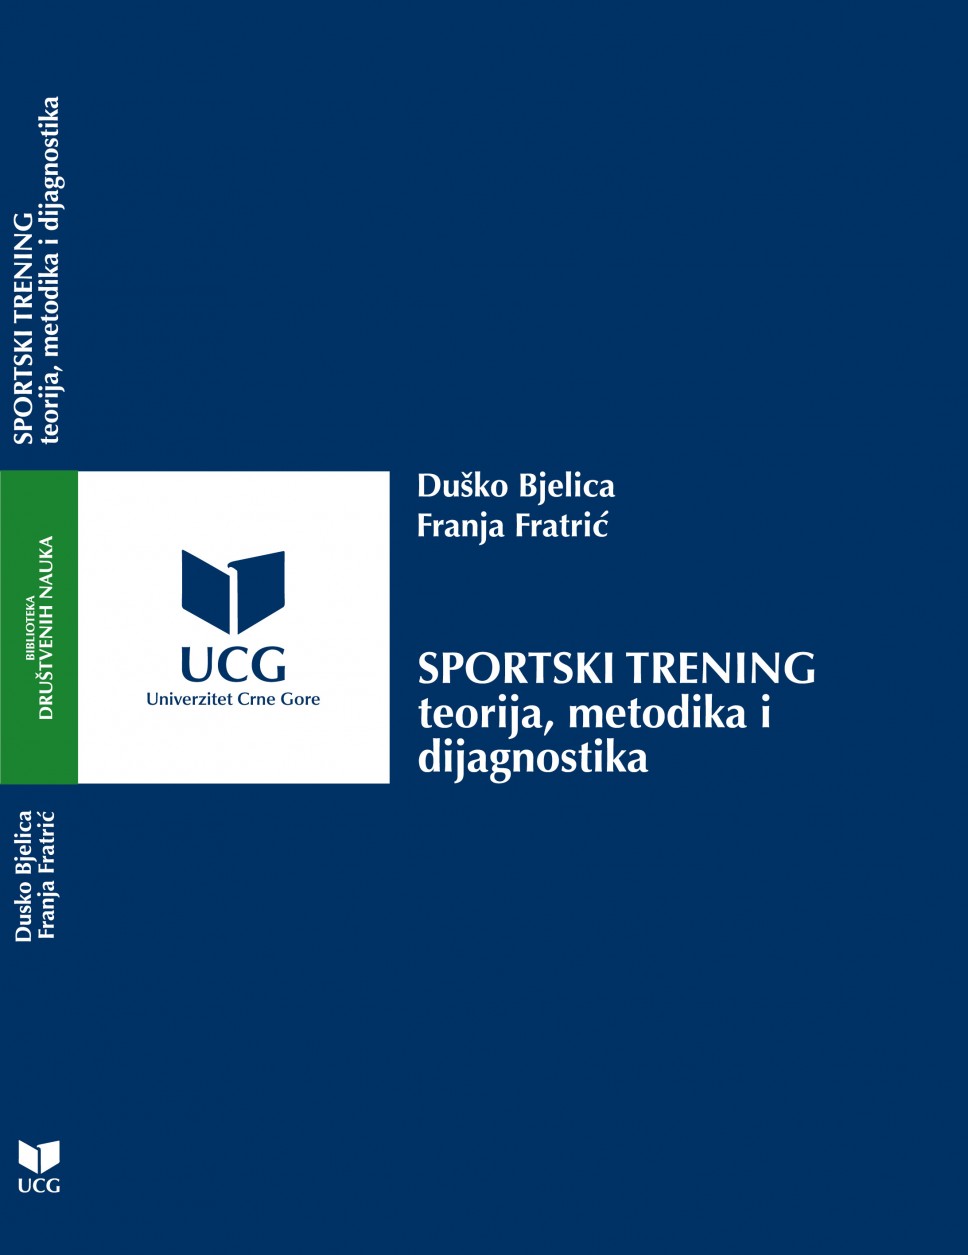 Duško Bjelica, Franja Fratrić, "Sportski trening"